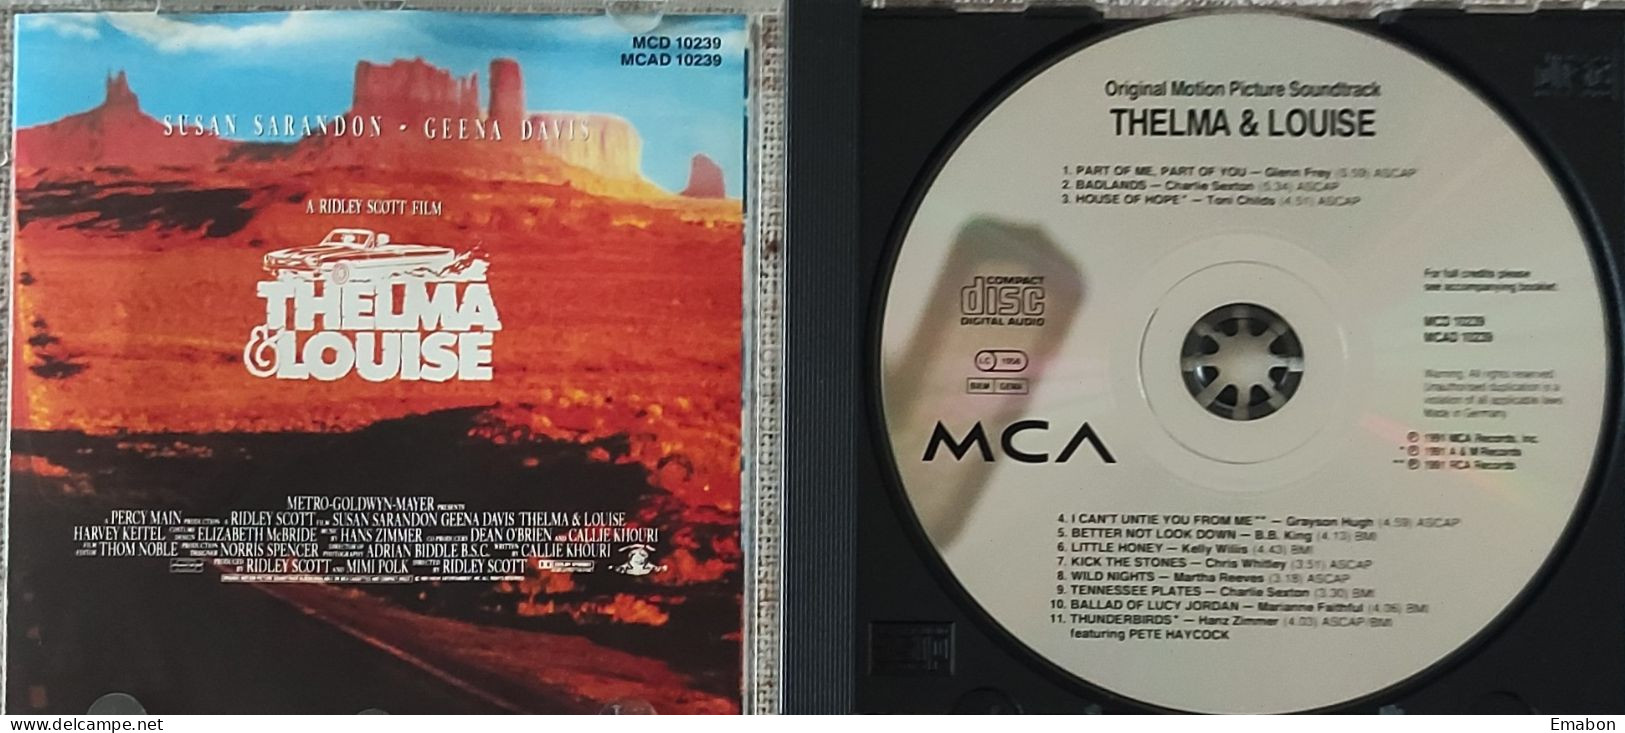 BORGATTA - FILM MUSIC  - Cd  RIDLEY SCOTT - THELMA & LOUISE - MCA RECORDS 1991- USATO In Buono Stato - Filmmusik